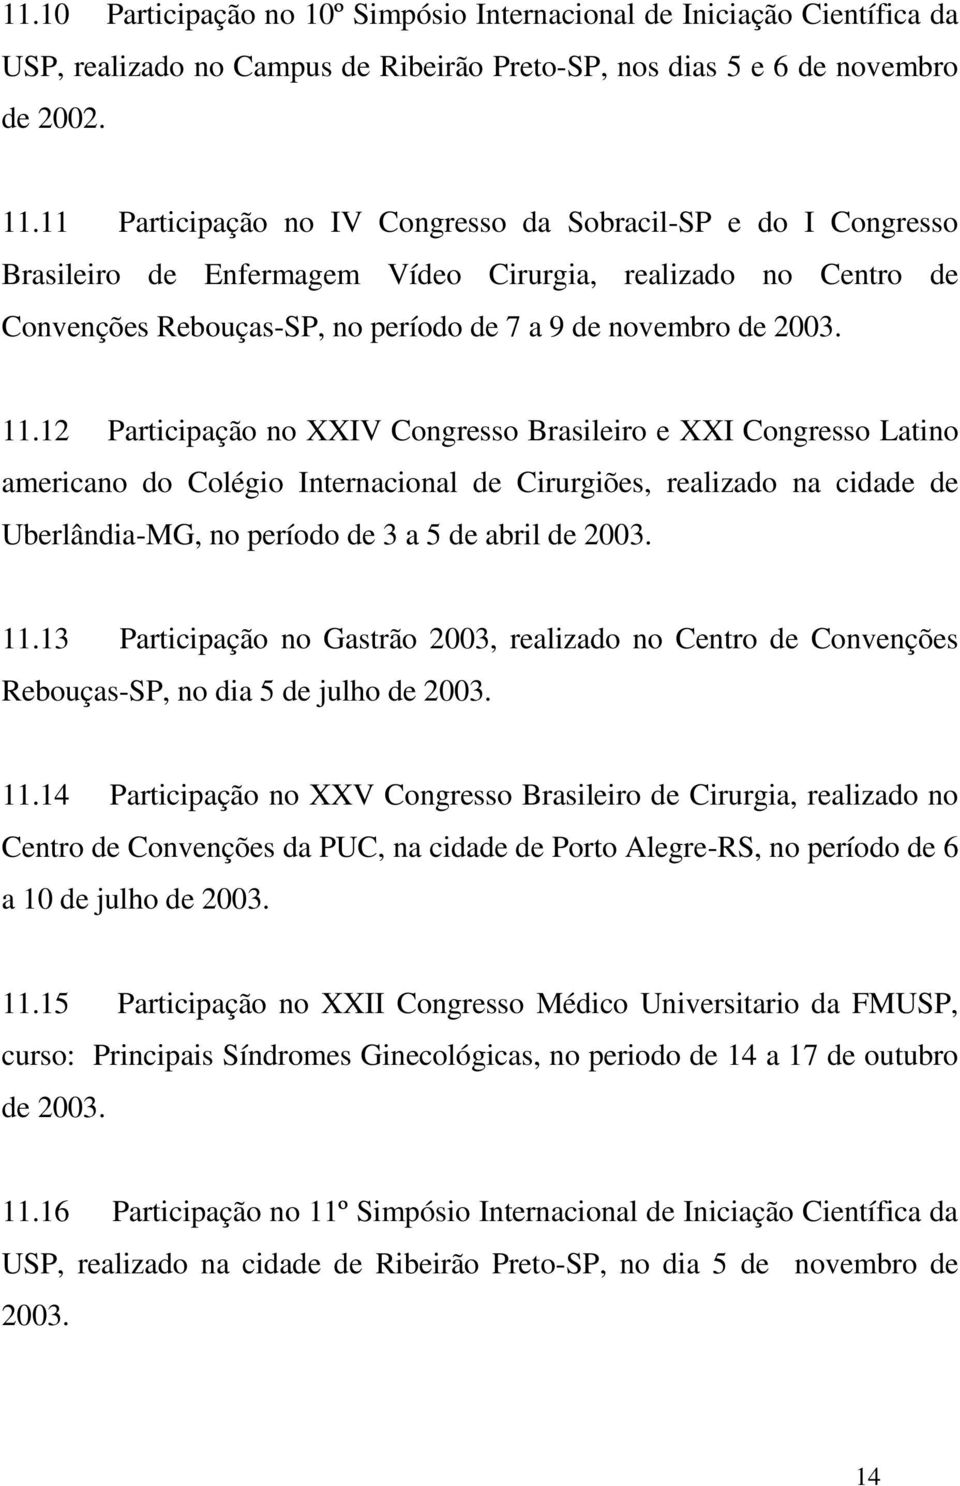 12 Participação no XXIV Congresso Brasileiro e XXI Congresso Latino americano do Colégio Internacional de Cirurgiões, realizado na cidade de Uberlândia-MG, no período de 3 a 5 de abril de 2003. 11.